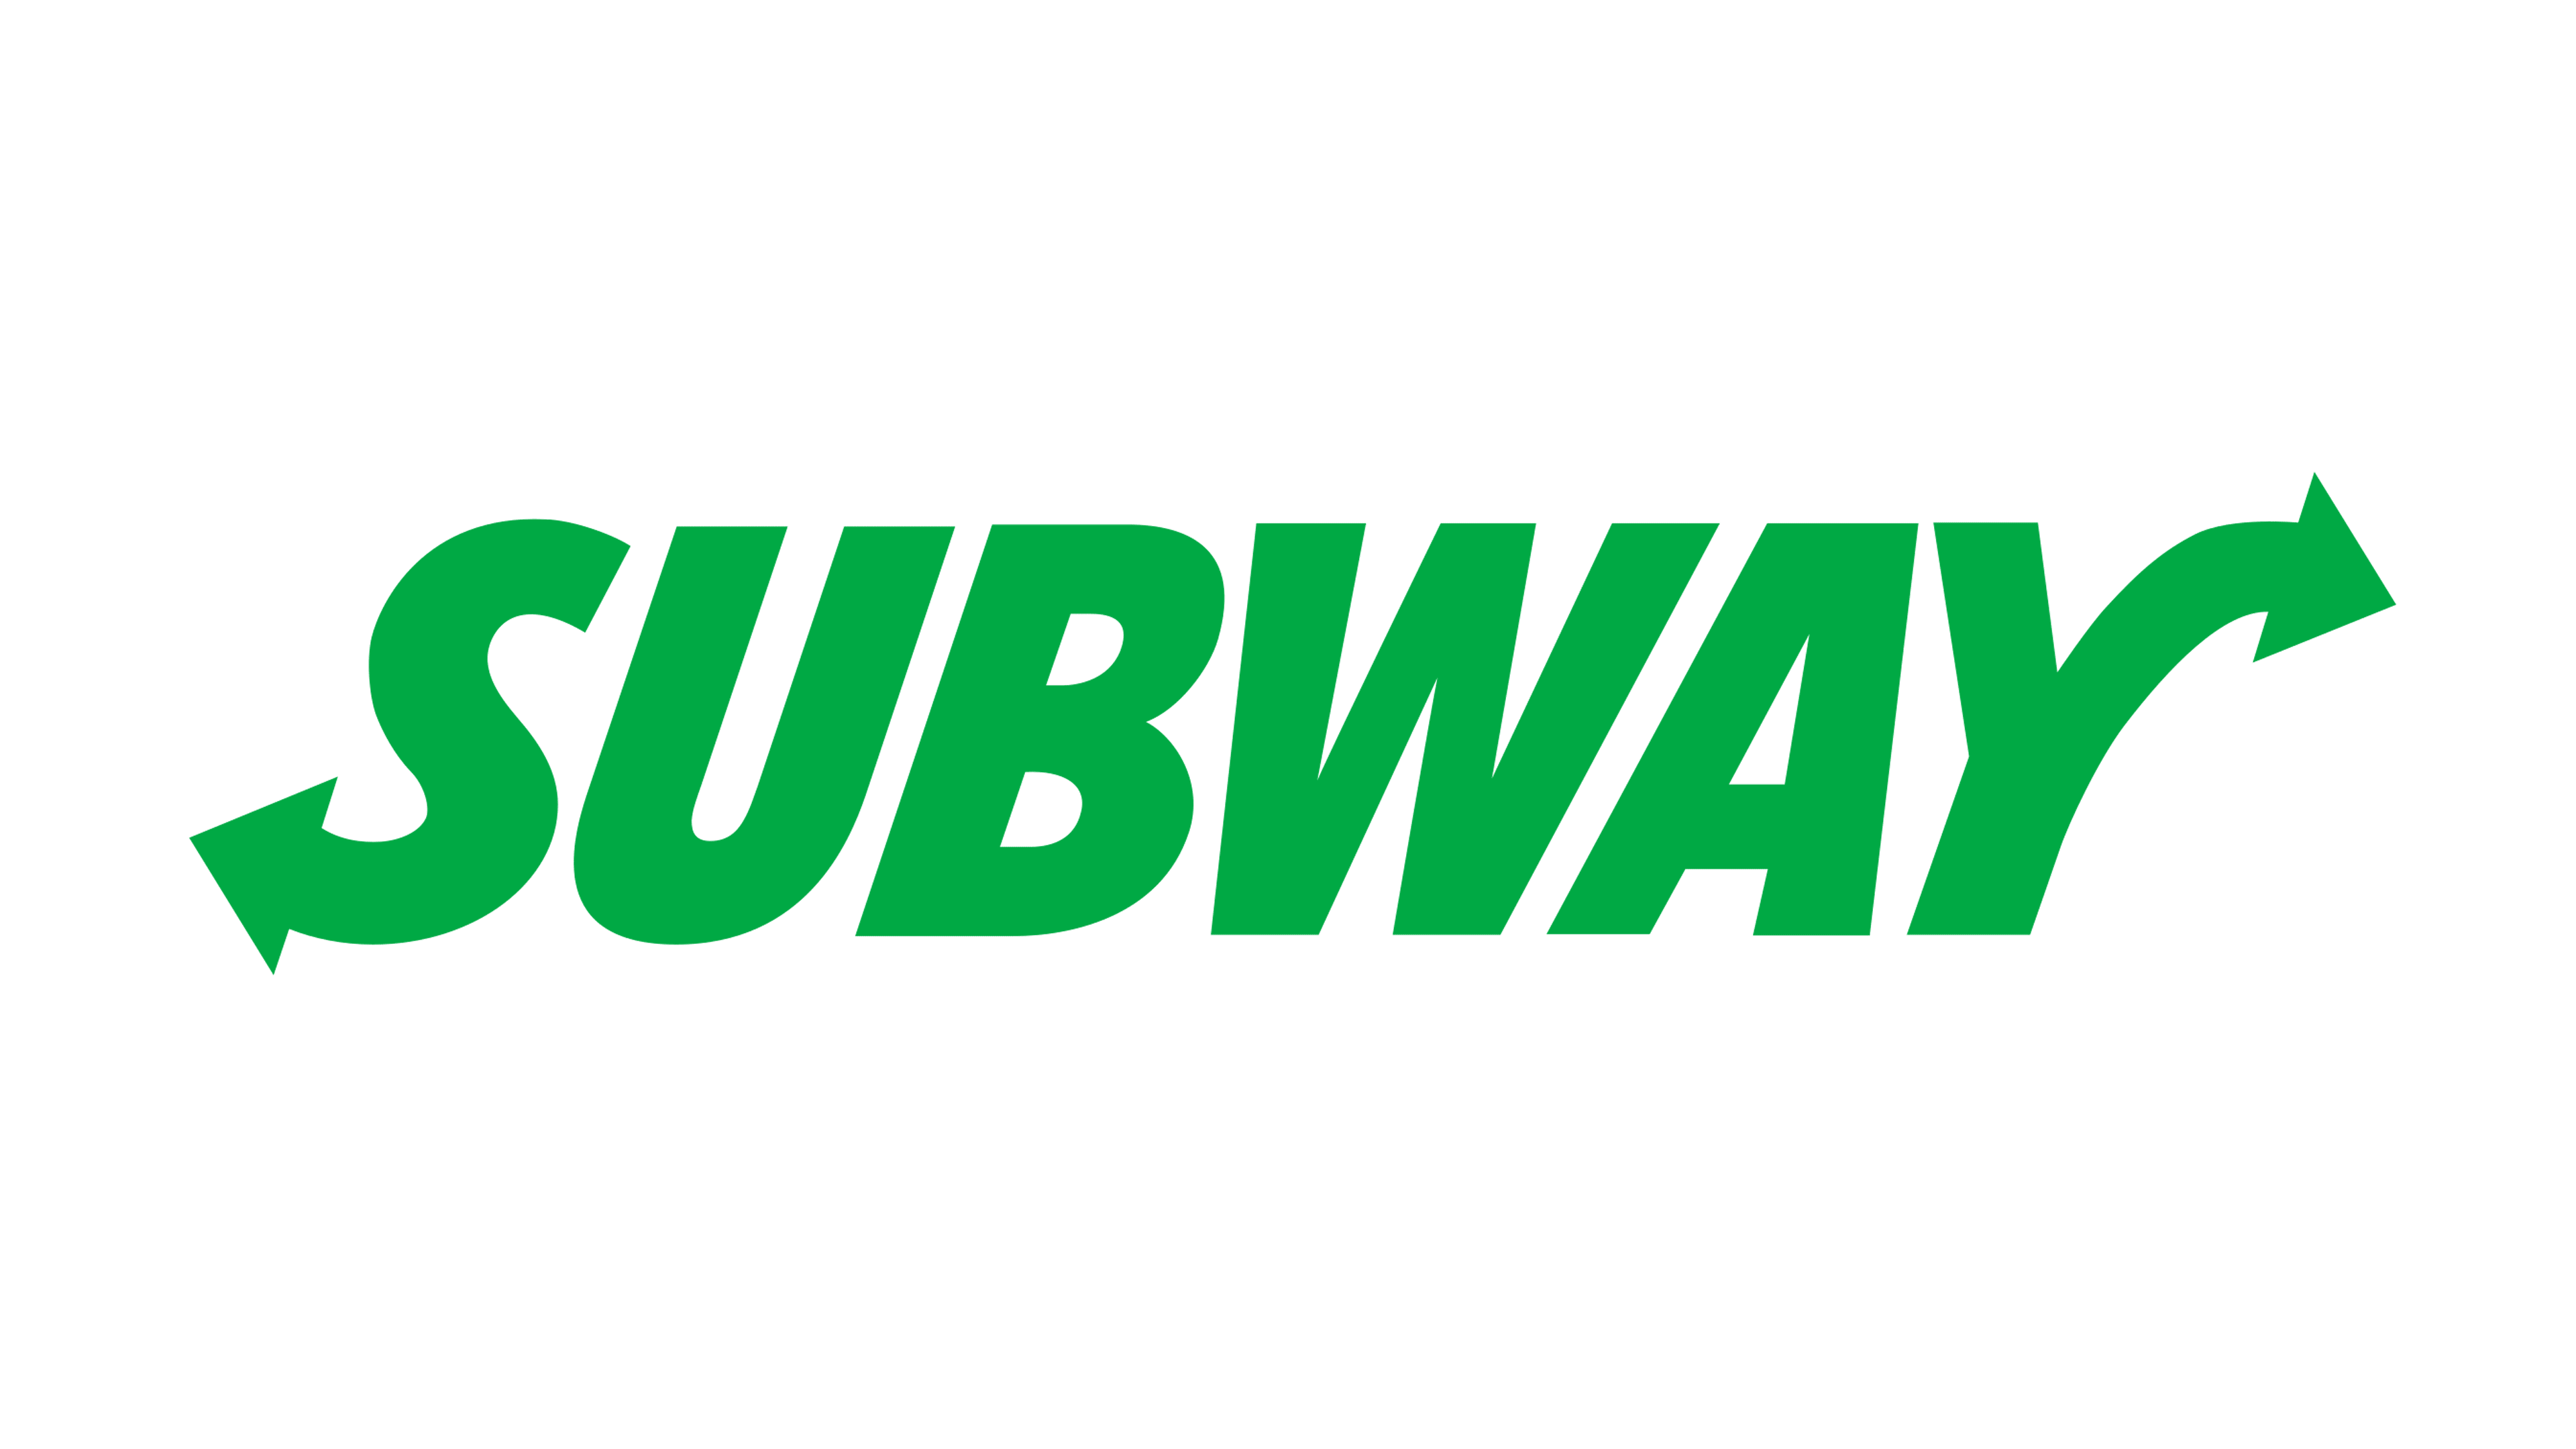 Toronto Transit Commission Subway Logo logo png download